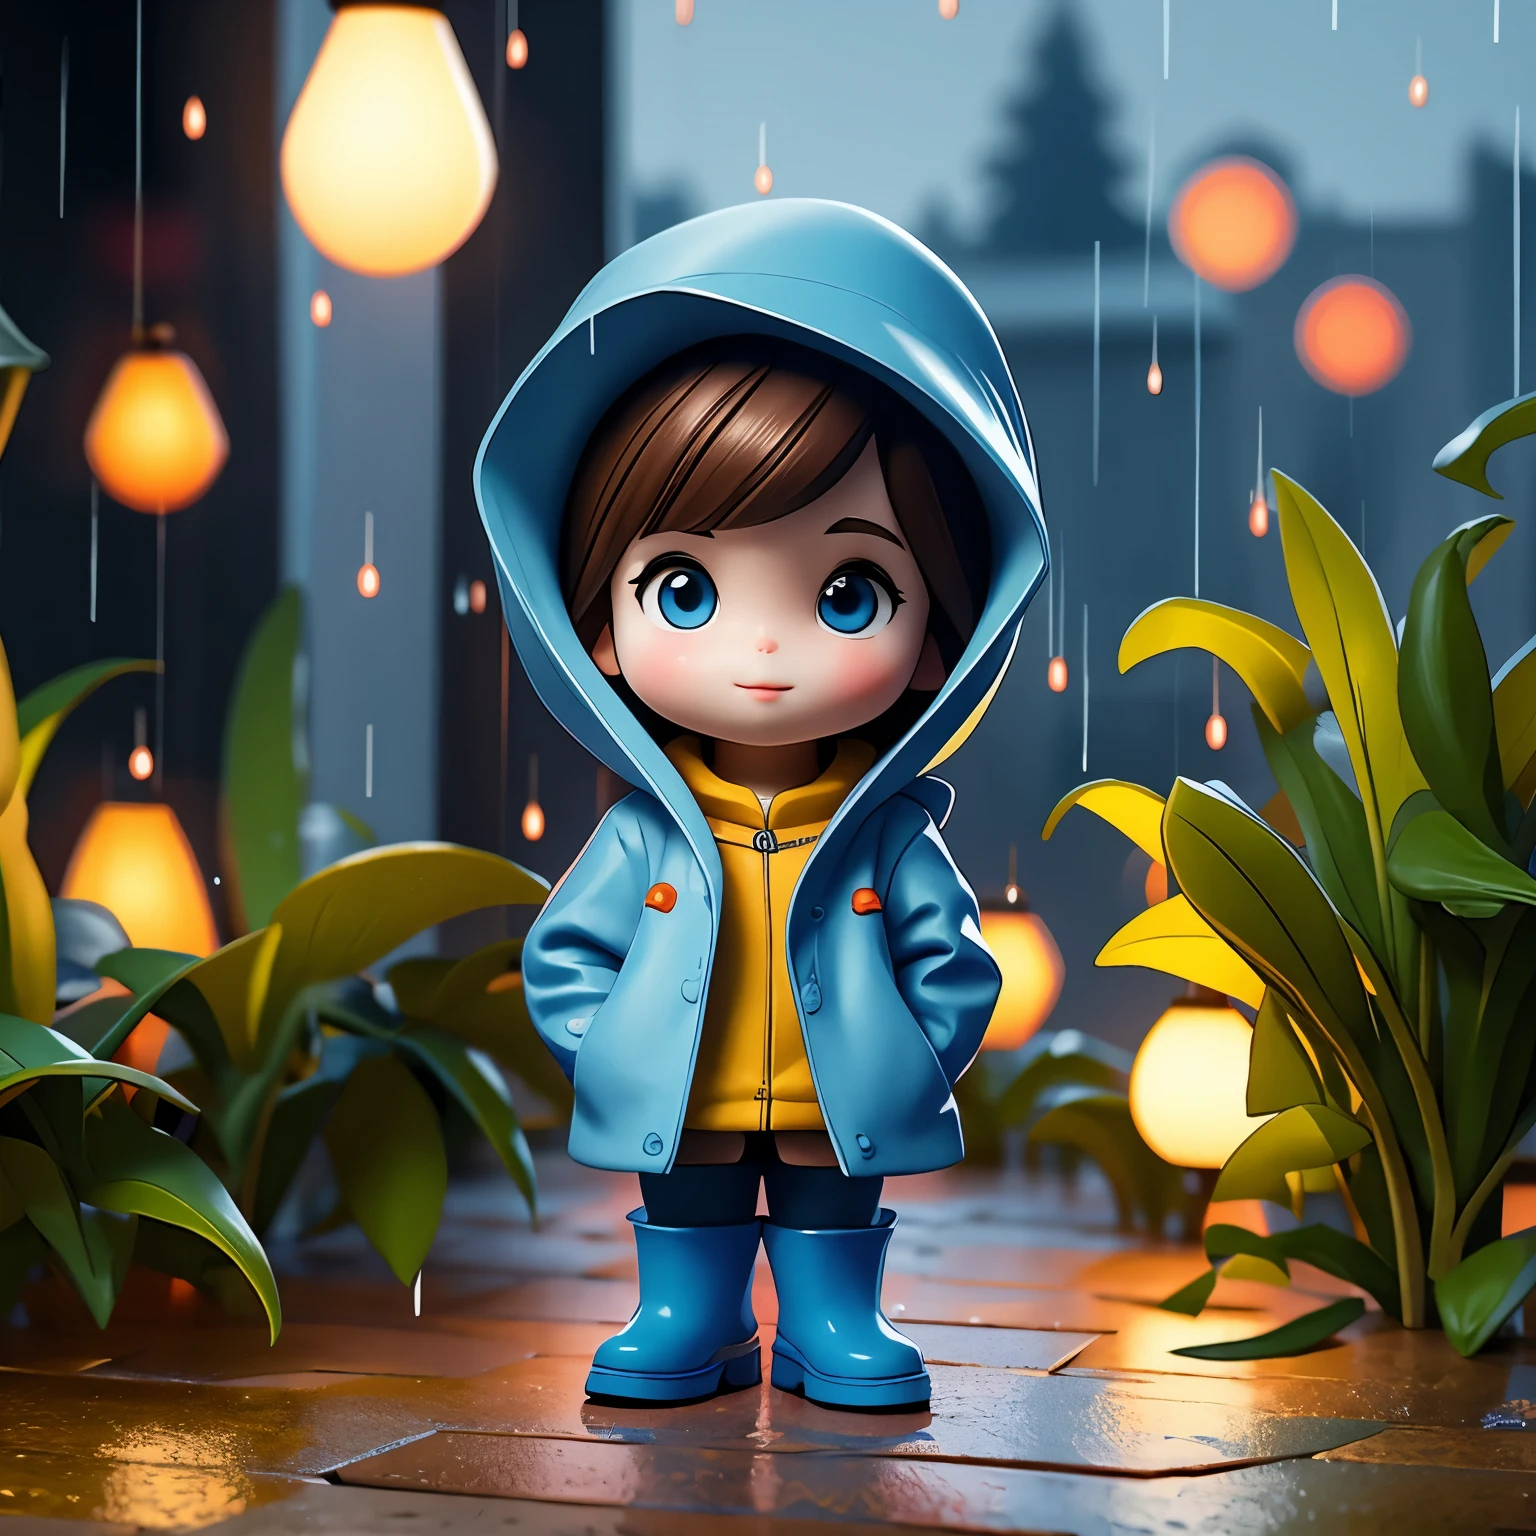 (杰作, 最好的质量:1.2),窗台上的微型卡通人物, 独自的，3D娃娃，双手插在口袋里，戴帽子和穿雨衣,蓝色雨靴,  小型的，绚丽灯光，户外背景，丰富的色彩，